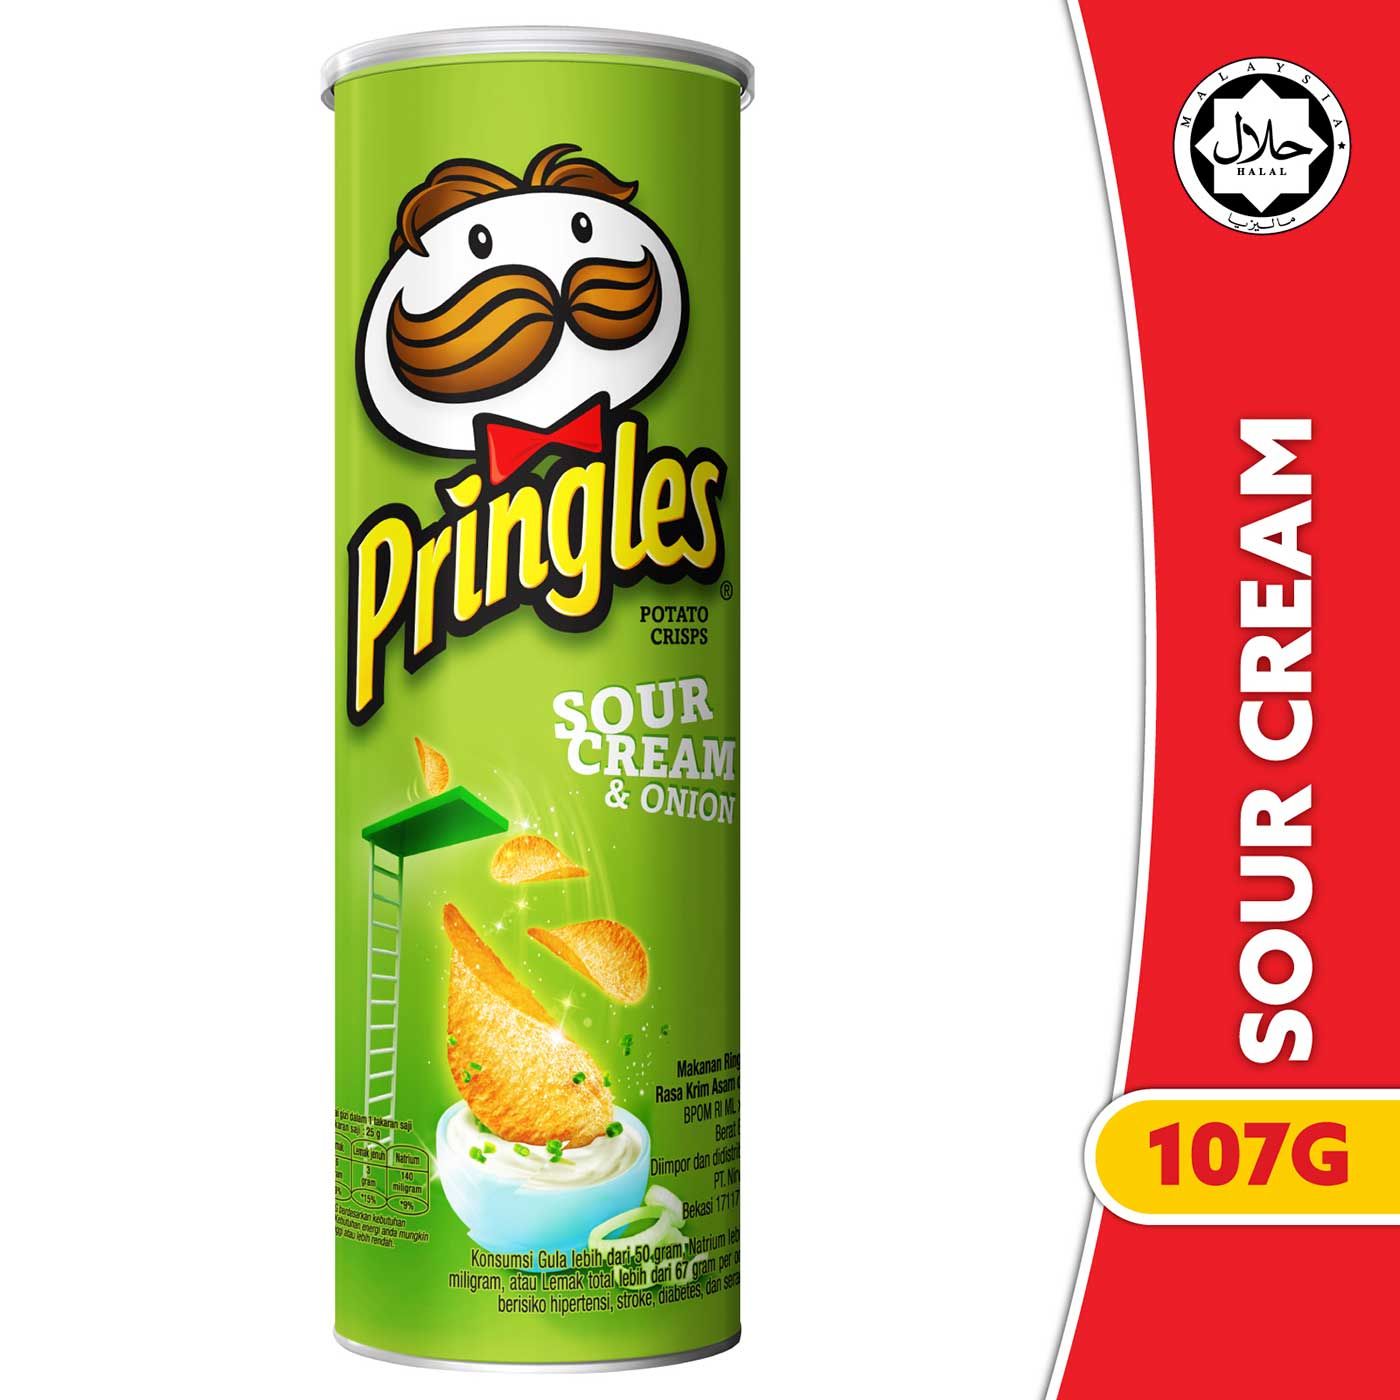 [CARTON DEALS] Pringles Sour Cream & Onion 107gr (12 Pcs) - 2